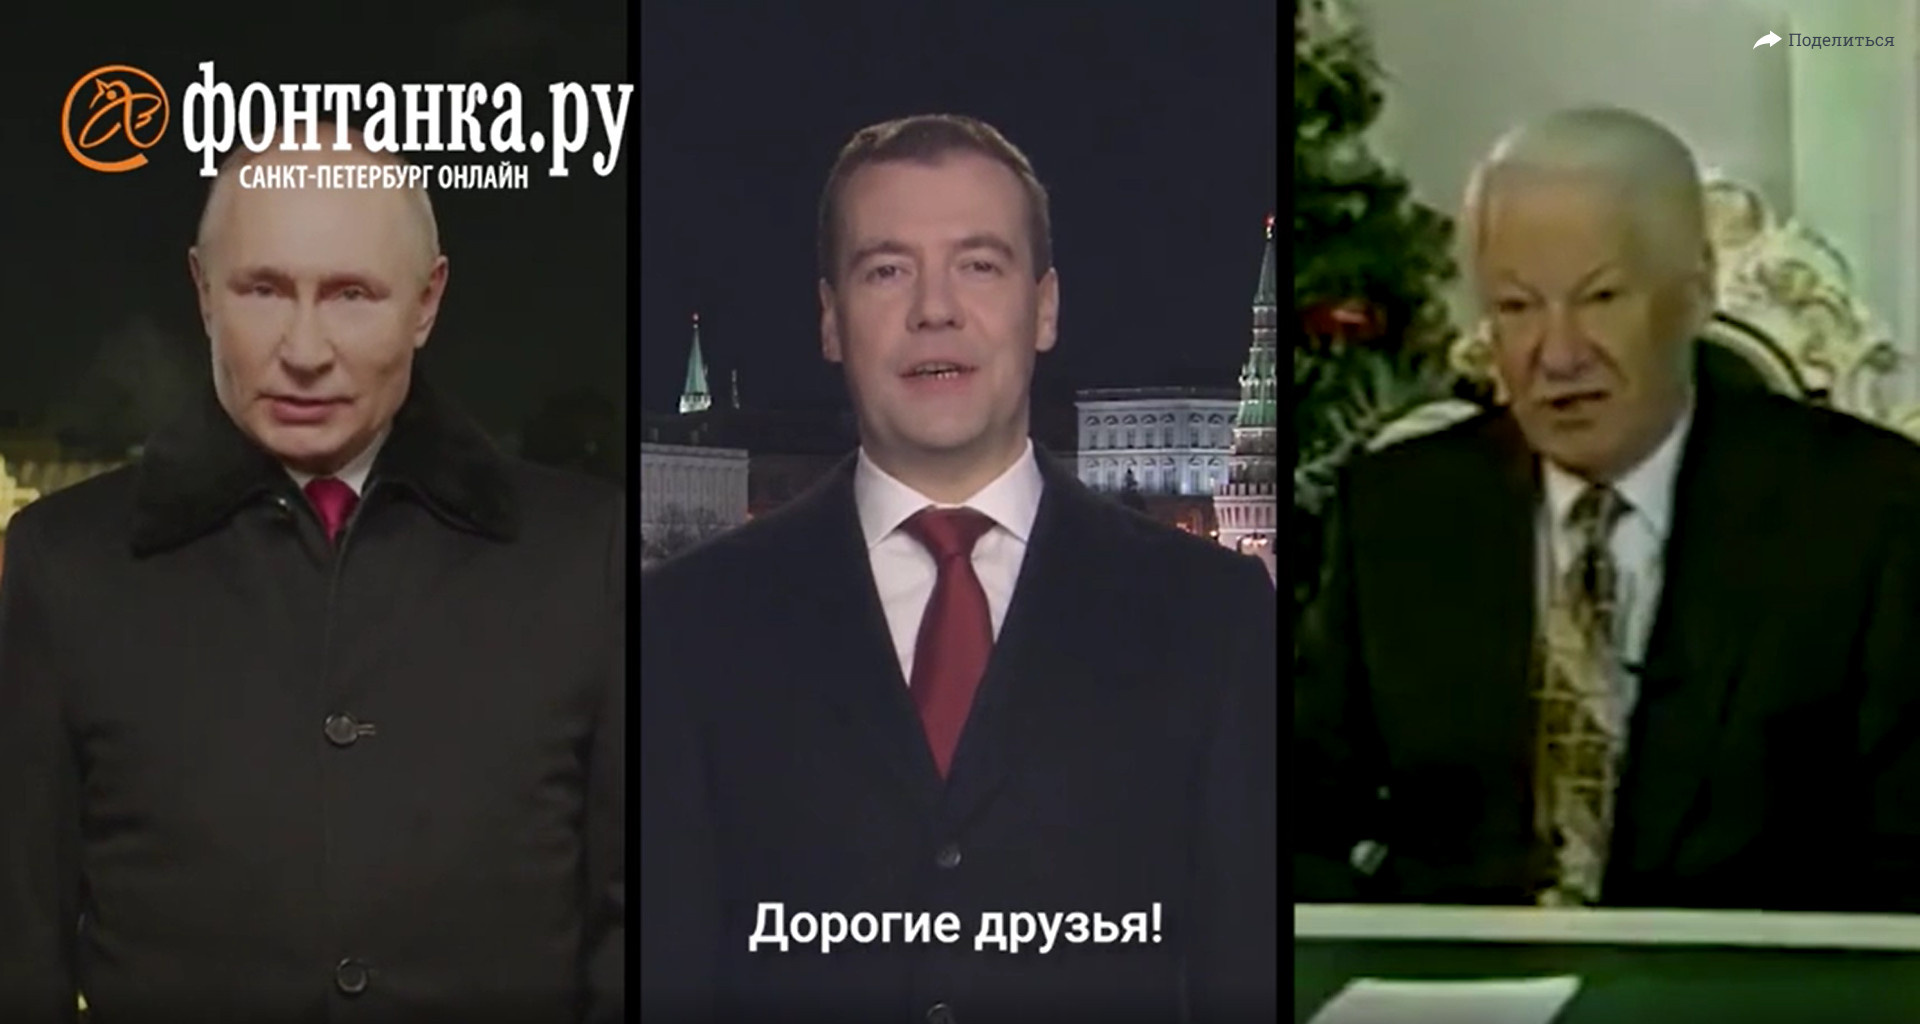 80 лет новогодних обращений. Посмотрите наше универсальное телепоздравление — от Калинина до Путина